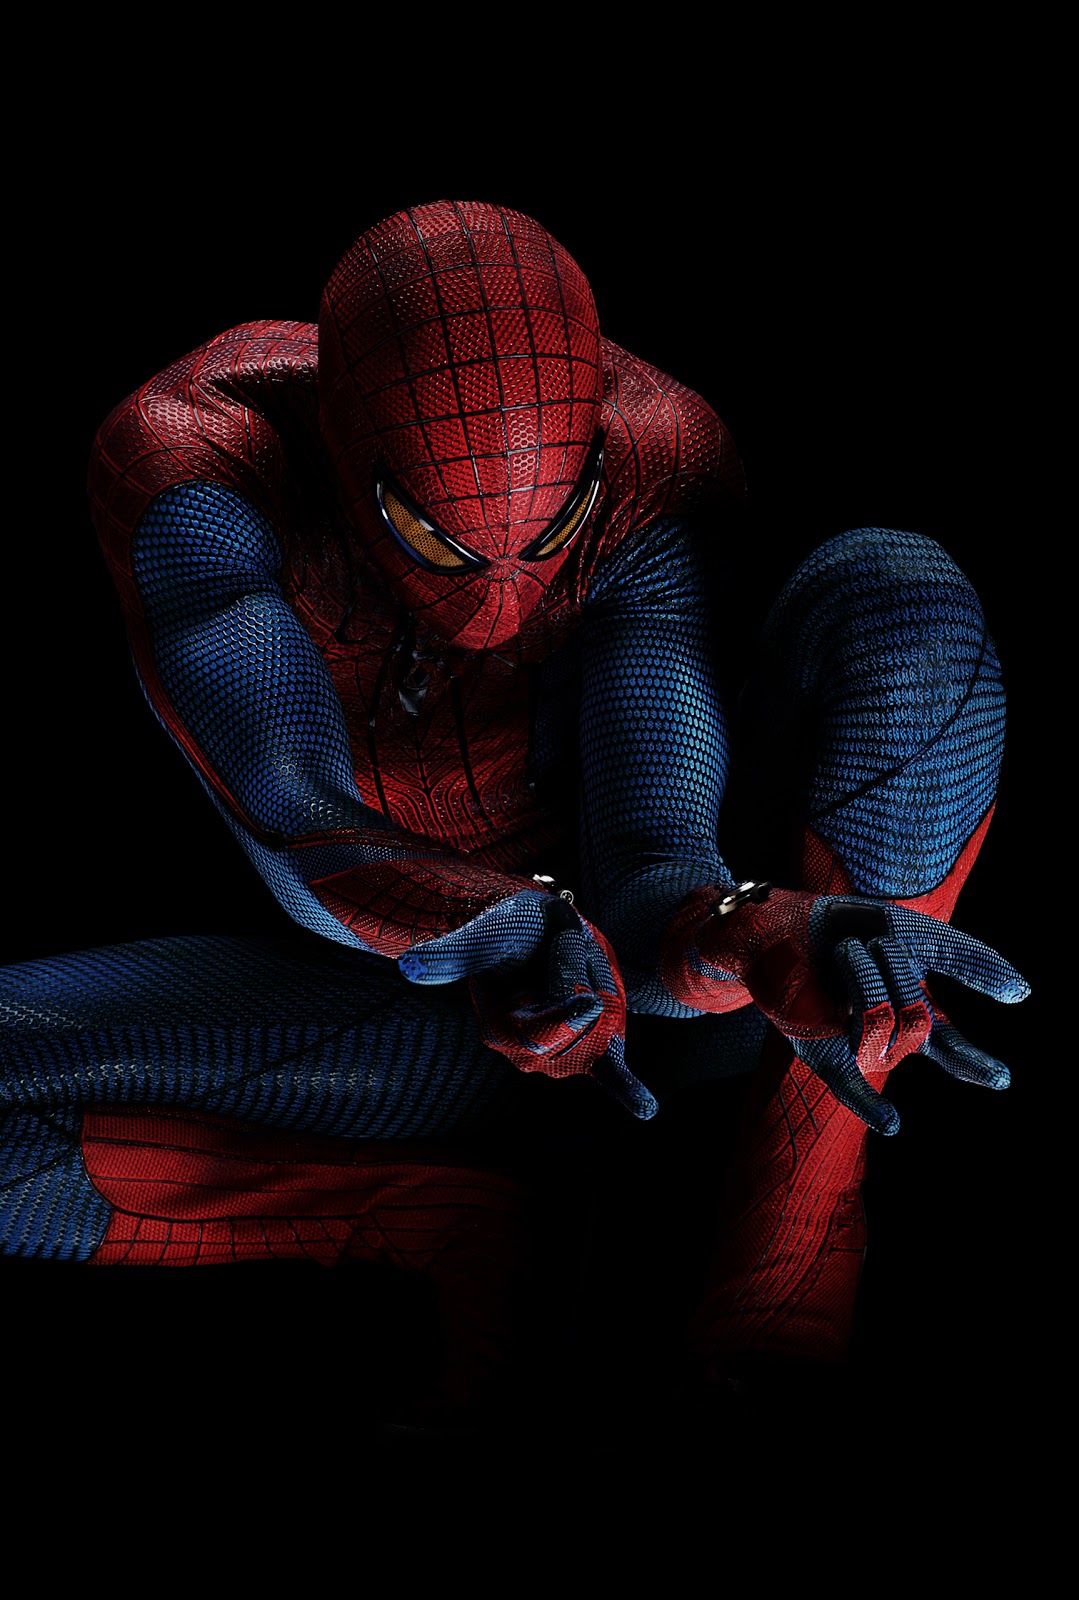 The Amazing Spider Man Movie Watch Online Download andhramirchi